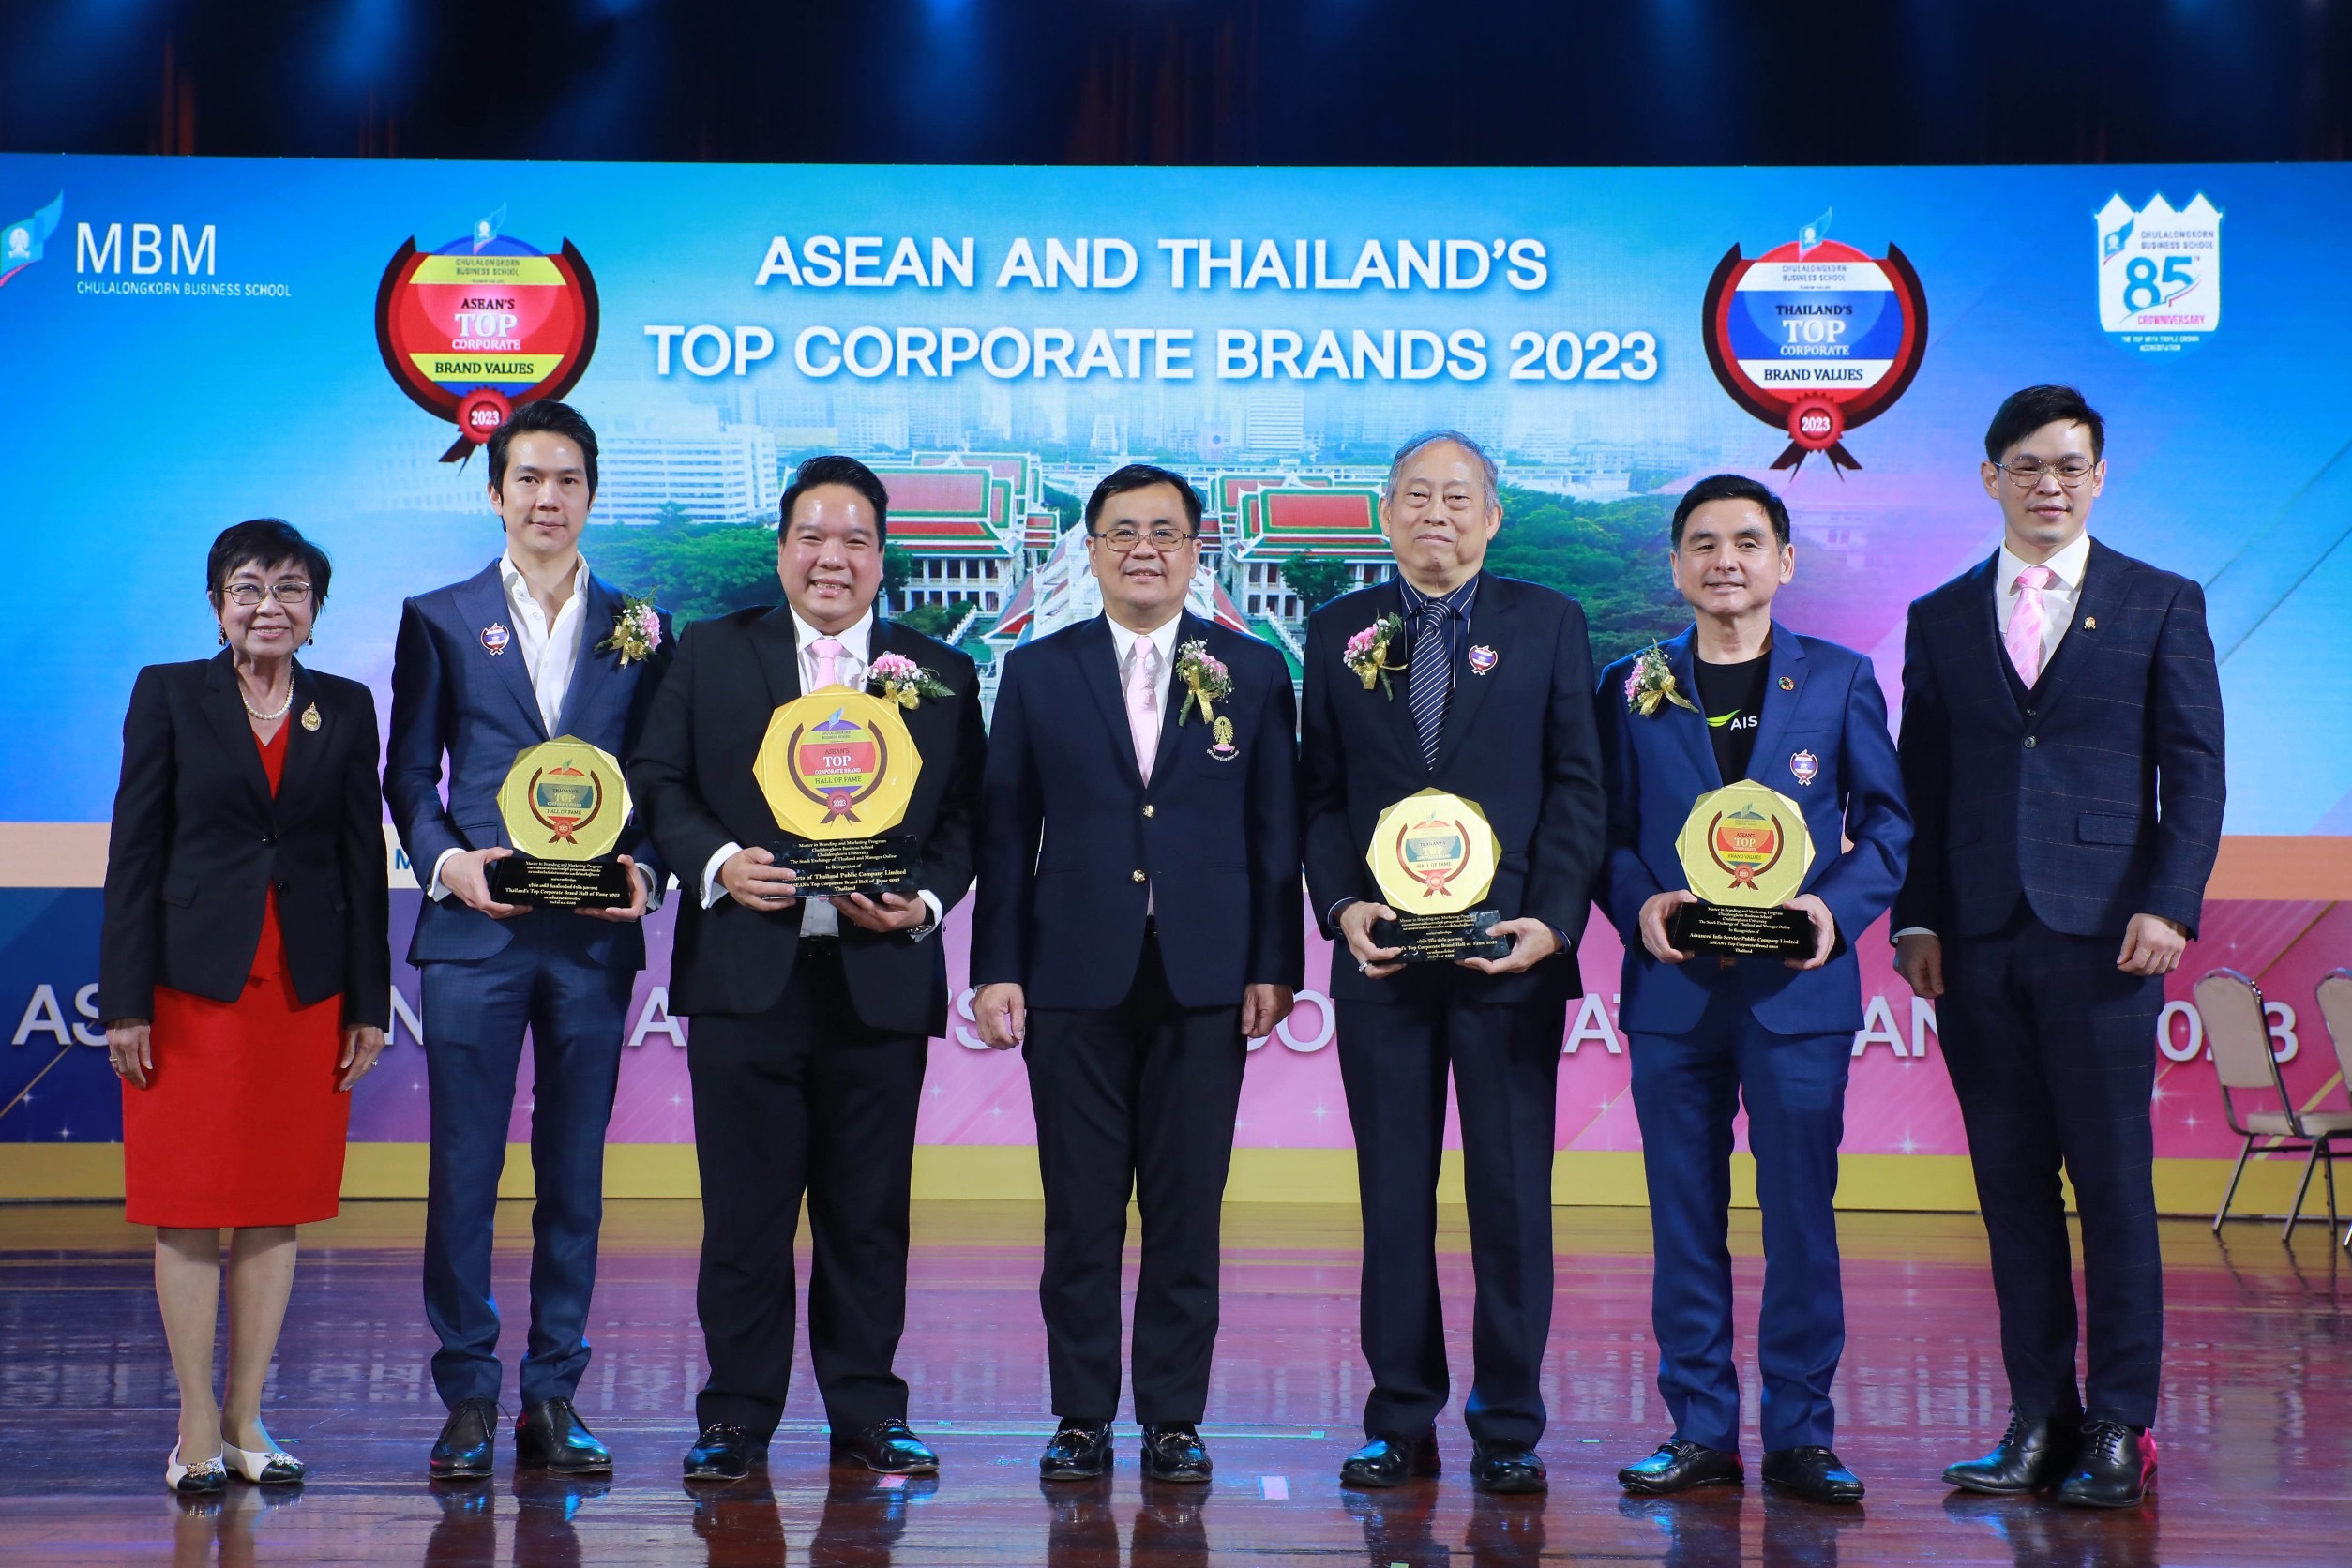 จุฬาฯ มอบรางวัล ASEAN and Thailand’s Top Corporate Brands ต่อเนื่องเป็นปีที่ 14